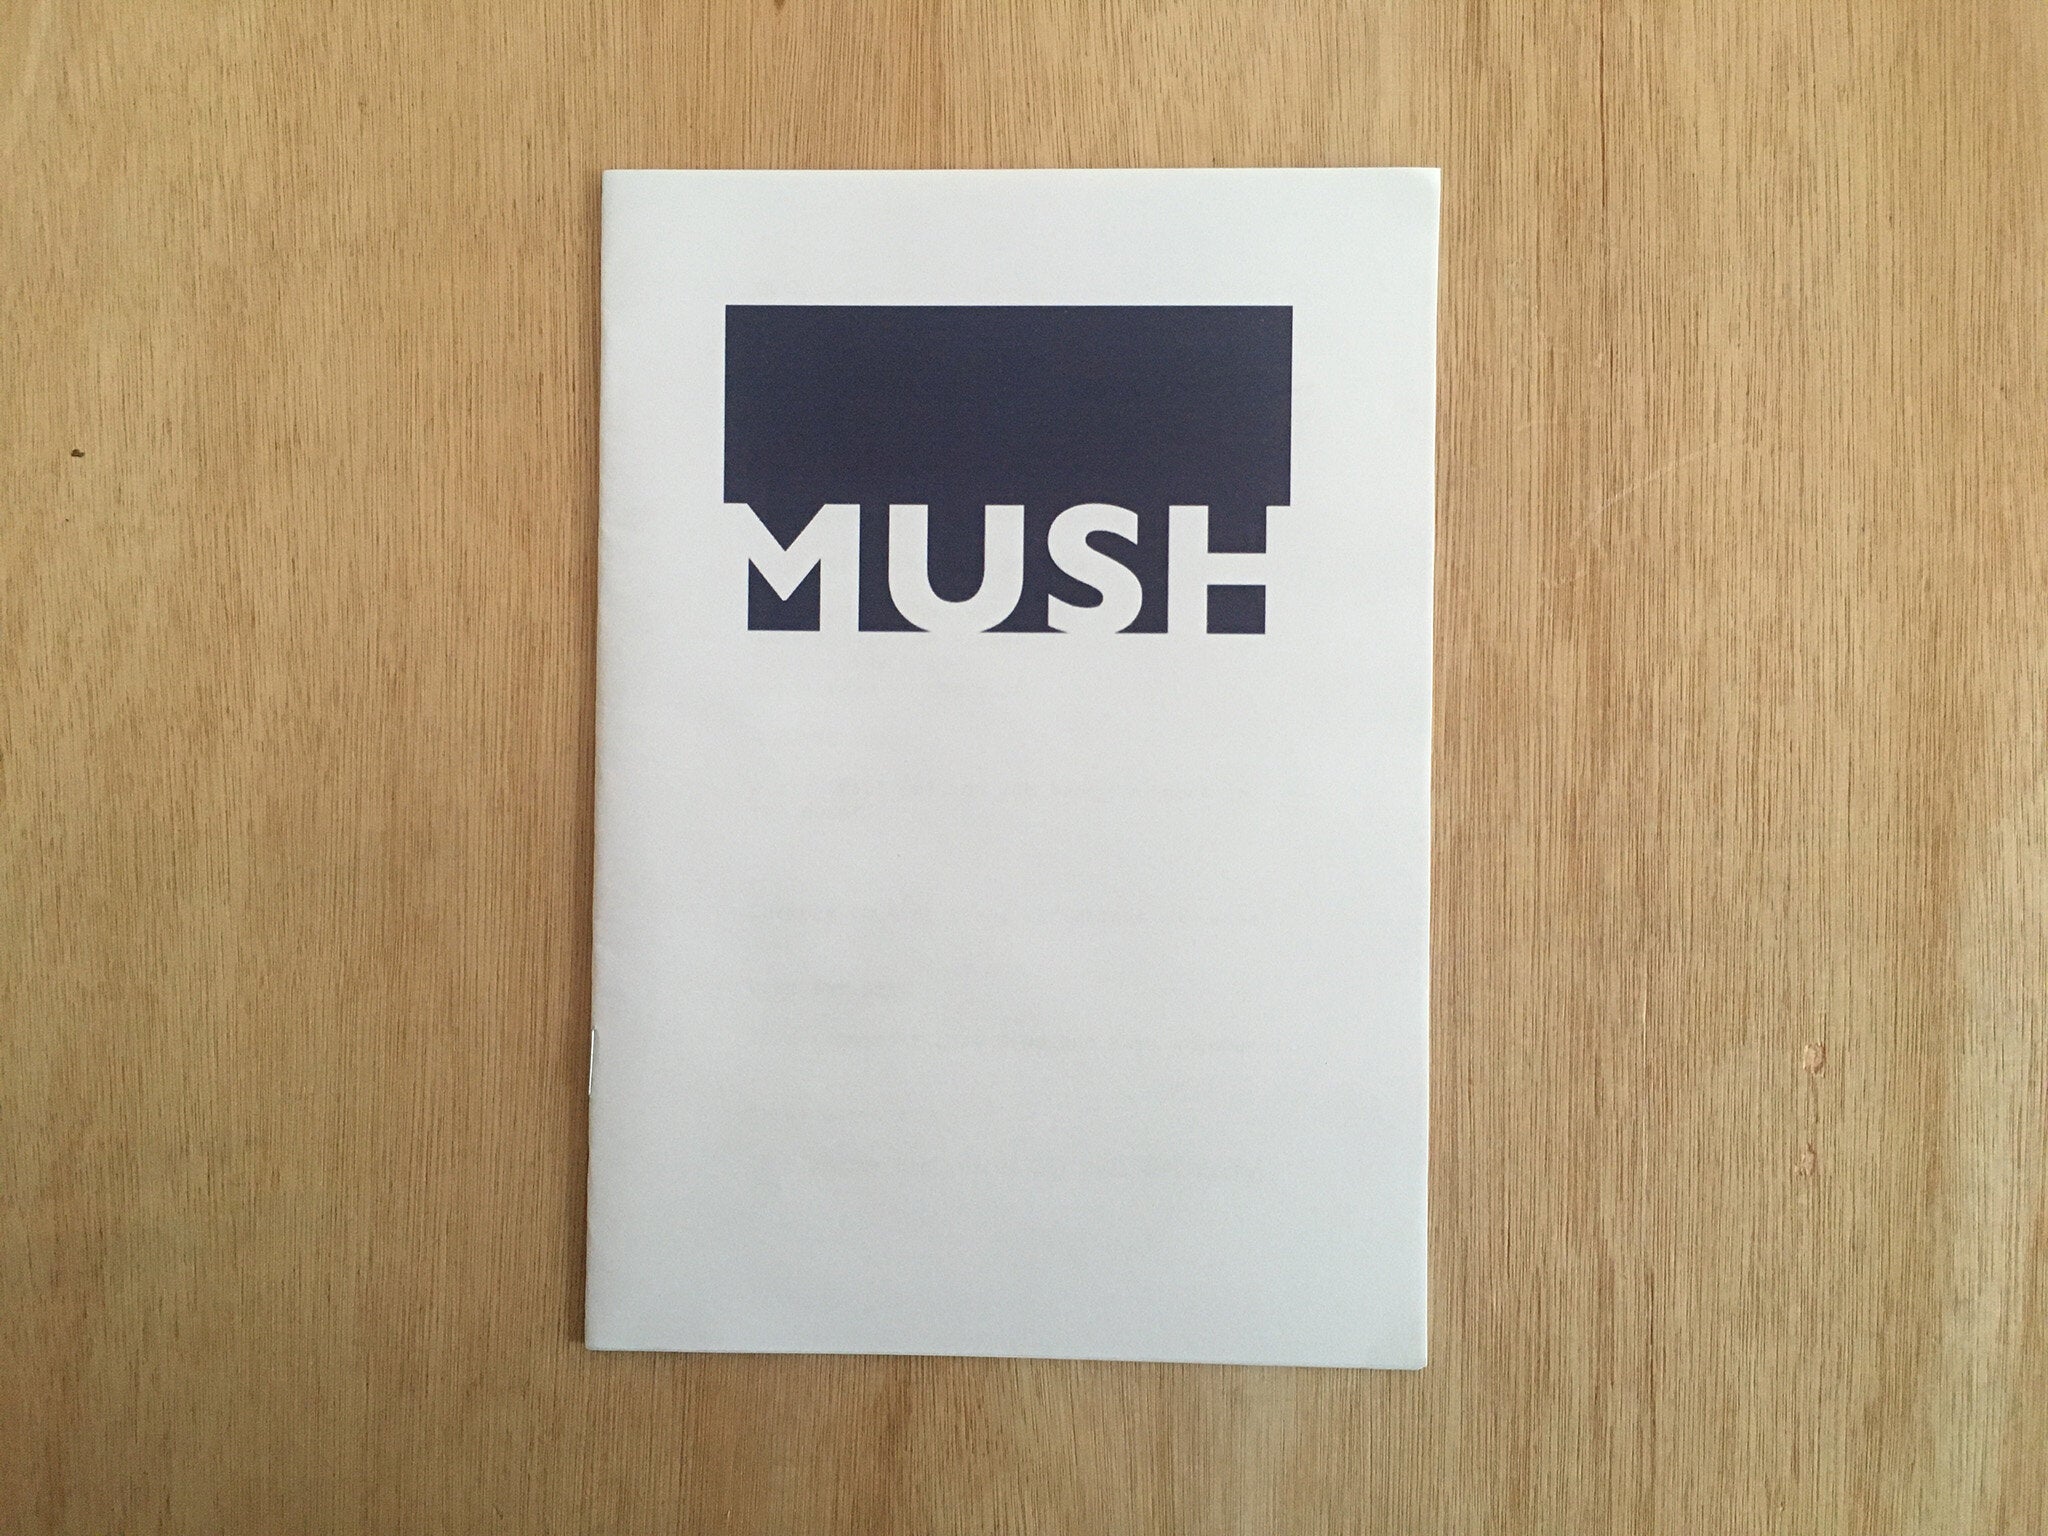 MUSH by Jono Allen